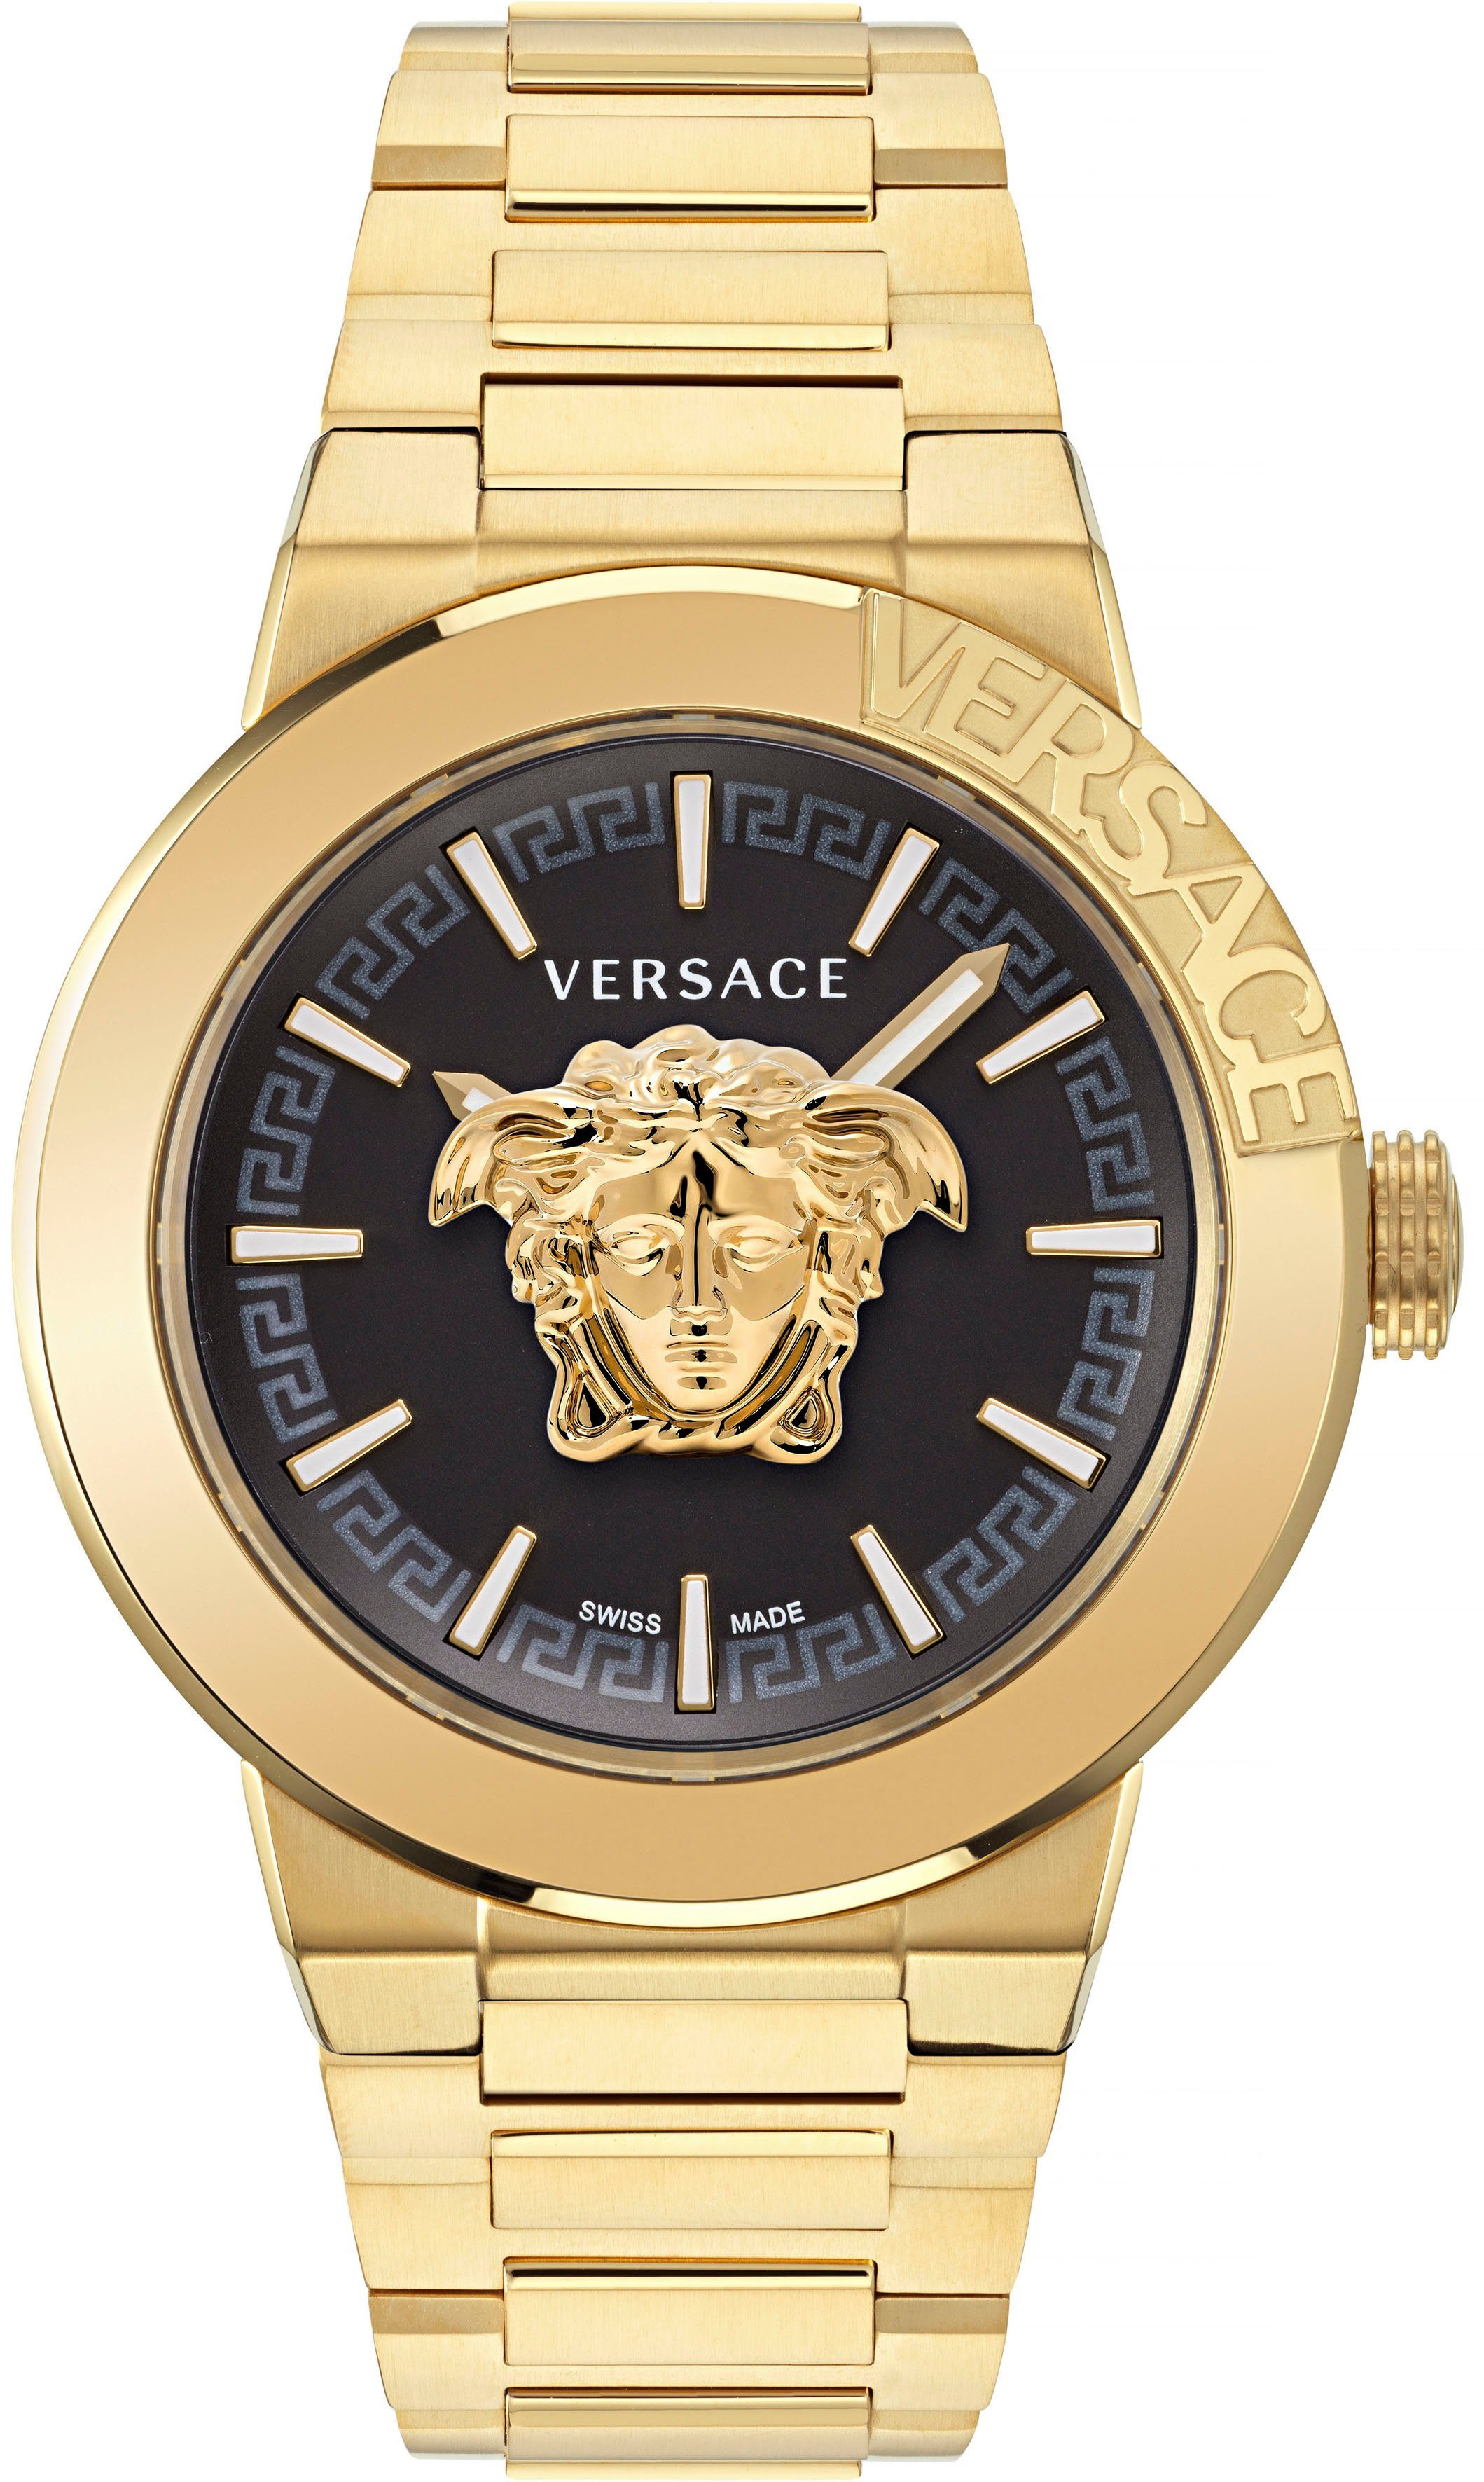 Überraschend günstig Versace Quarzuhr Edelstahl VE7E00623, GENT, aus goldfarben MEDUSA Armband IP-beschichtetem INFINITE